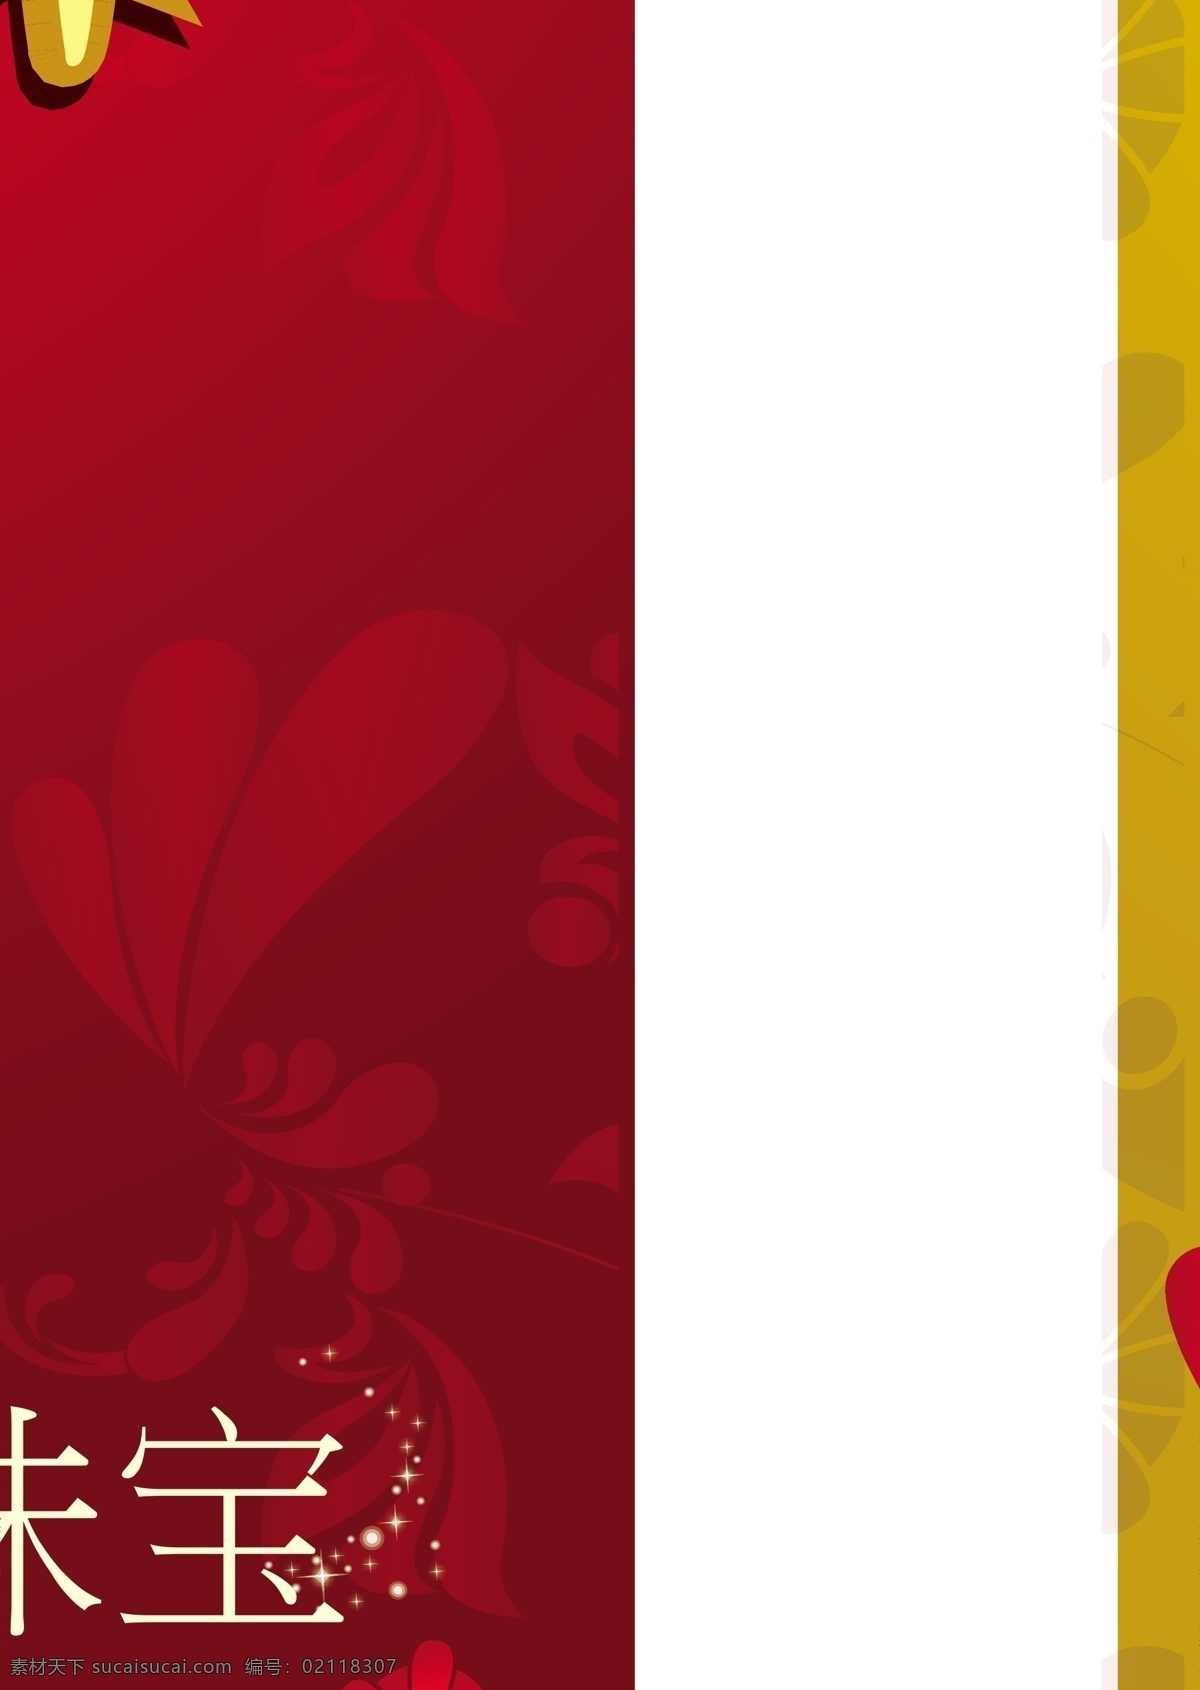 五 盛装 海报 ai格式 节日素材 盛装起舞 矢量图库 五一放歌 五一节 五一盛装海报 红黄底色 花角边 其他海报设计